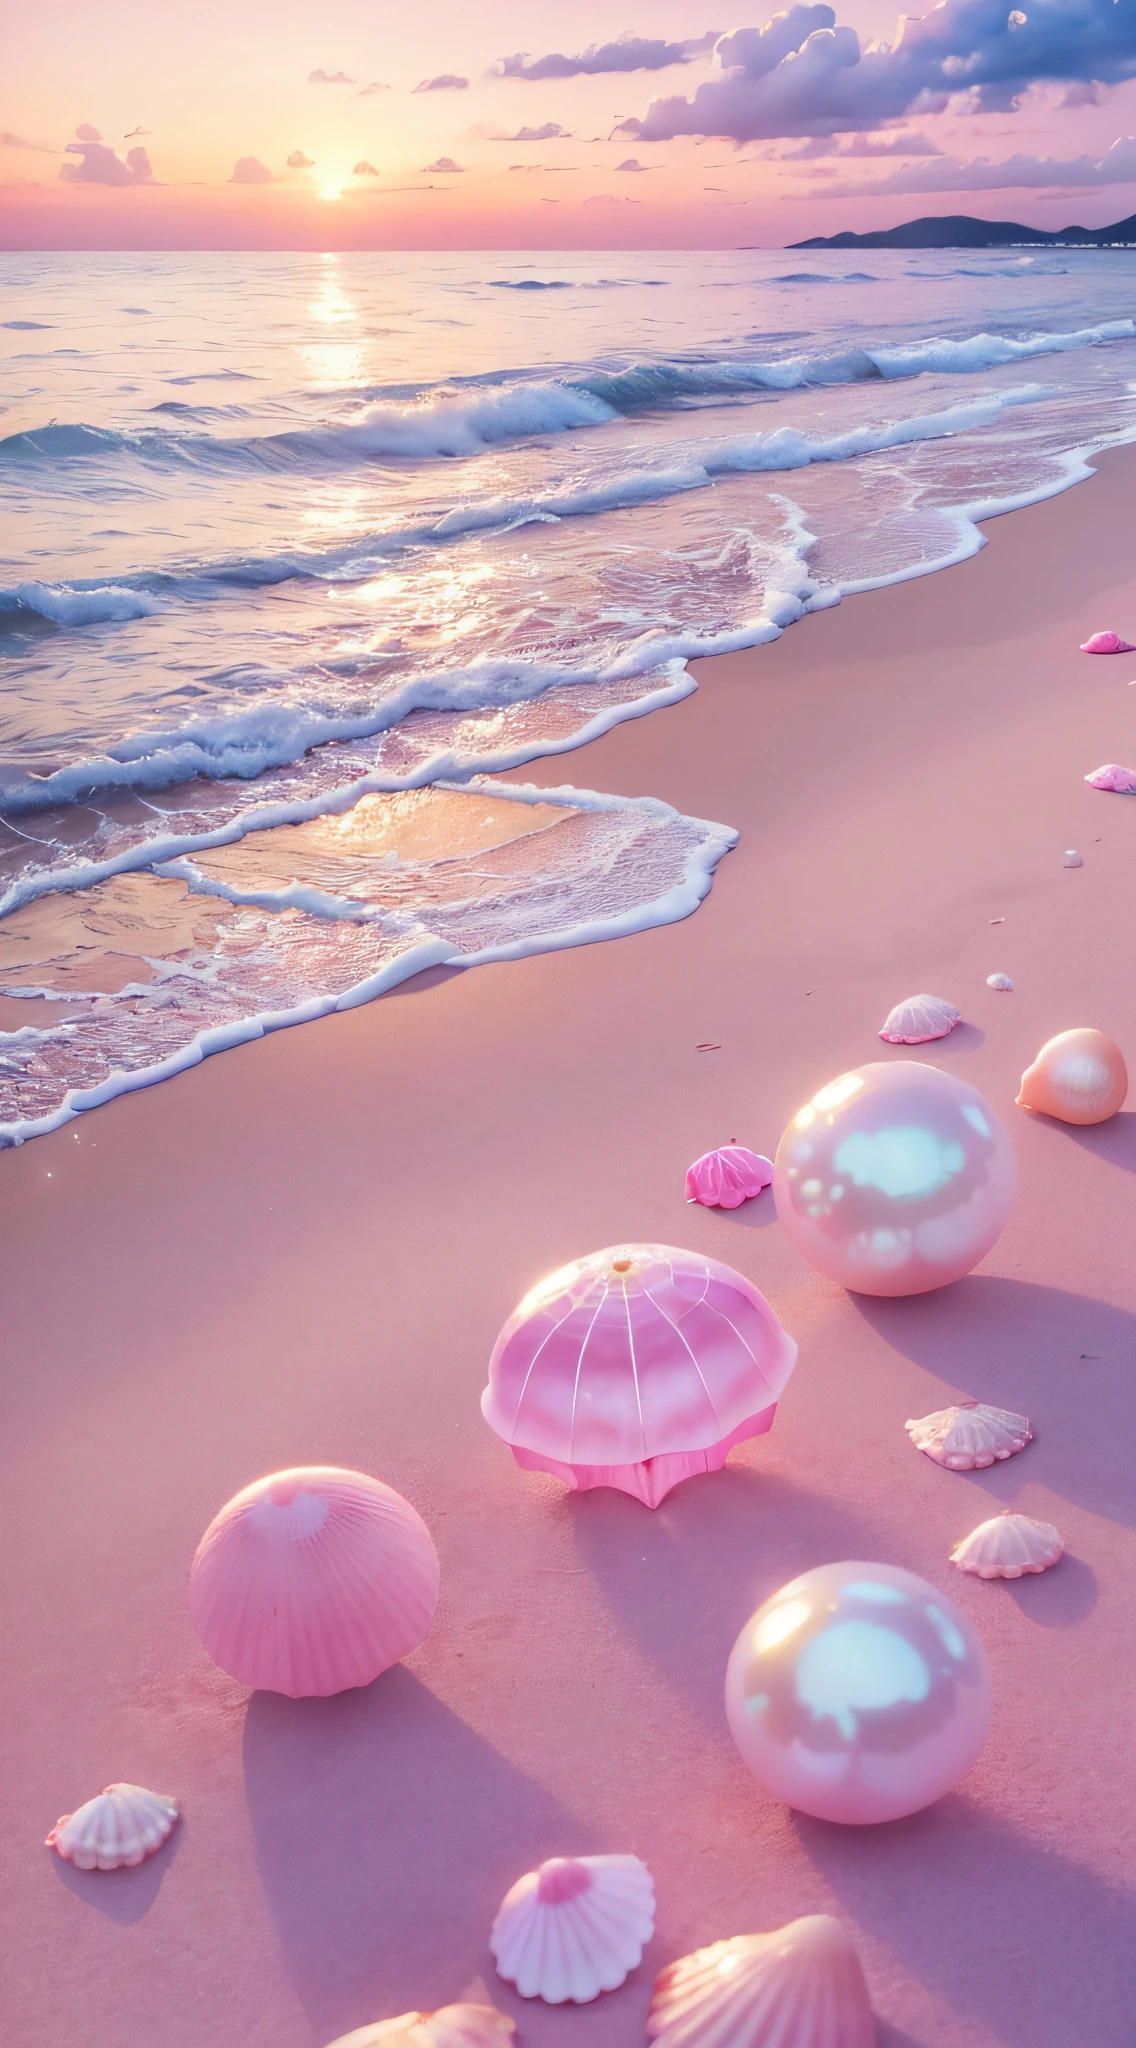 (8K, 원시 사진, 최고의 품질, 테이블 탑: 1.2), (현실적인, 현실적인: 1.37) There are pink 껍질 on the beach, 물이 있다, 진주 빛의, 진주 and 껍질, 소프트 플레이, 진주, 핑크해파리는 어디에나 있어요, 부드러운 3D 렌더링, 미묘한 거품, 거품 풍경, 일레이 셰이더, 파스텔 핑크, 핑크색 반사, 진주하늘, 껍질, 파라다이스 핑크, 파스텔 색상, 핑크 파스텔,